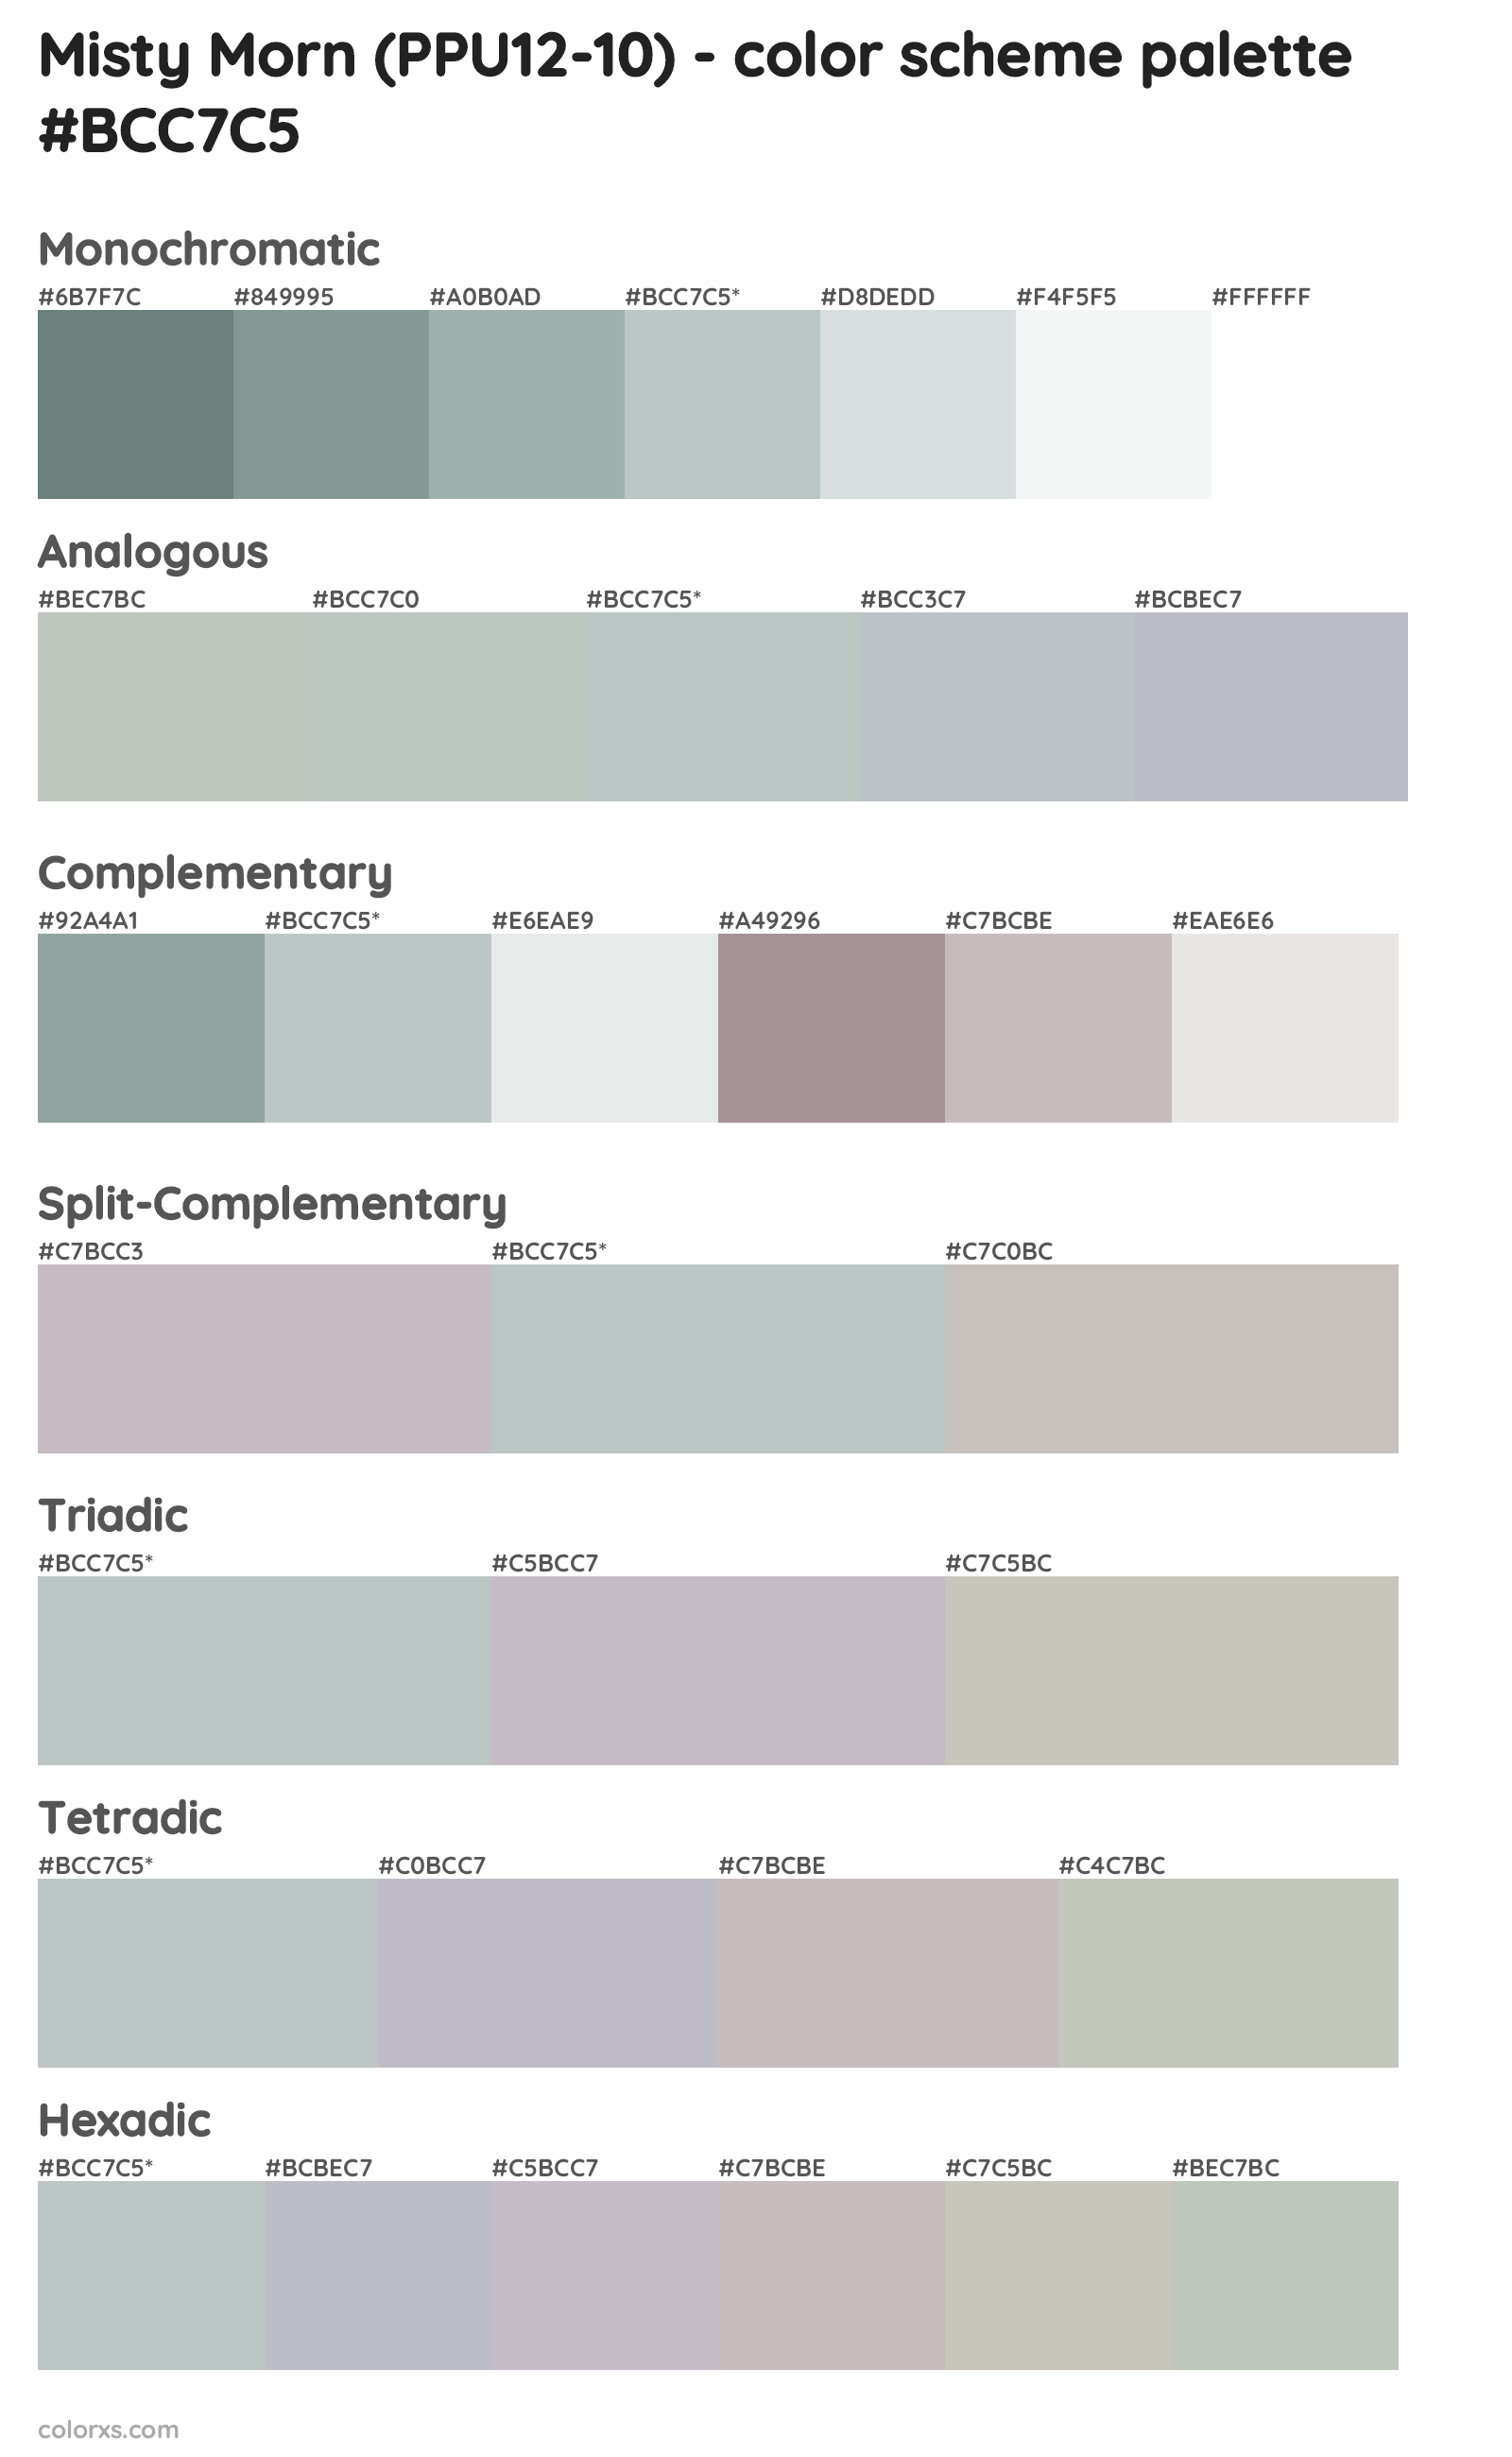 Misty Morn (PPU12-10) Color Scheme Palettes